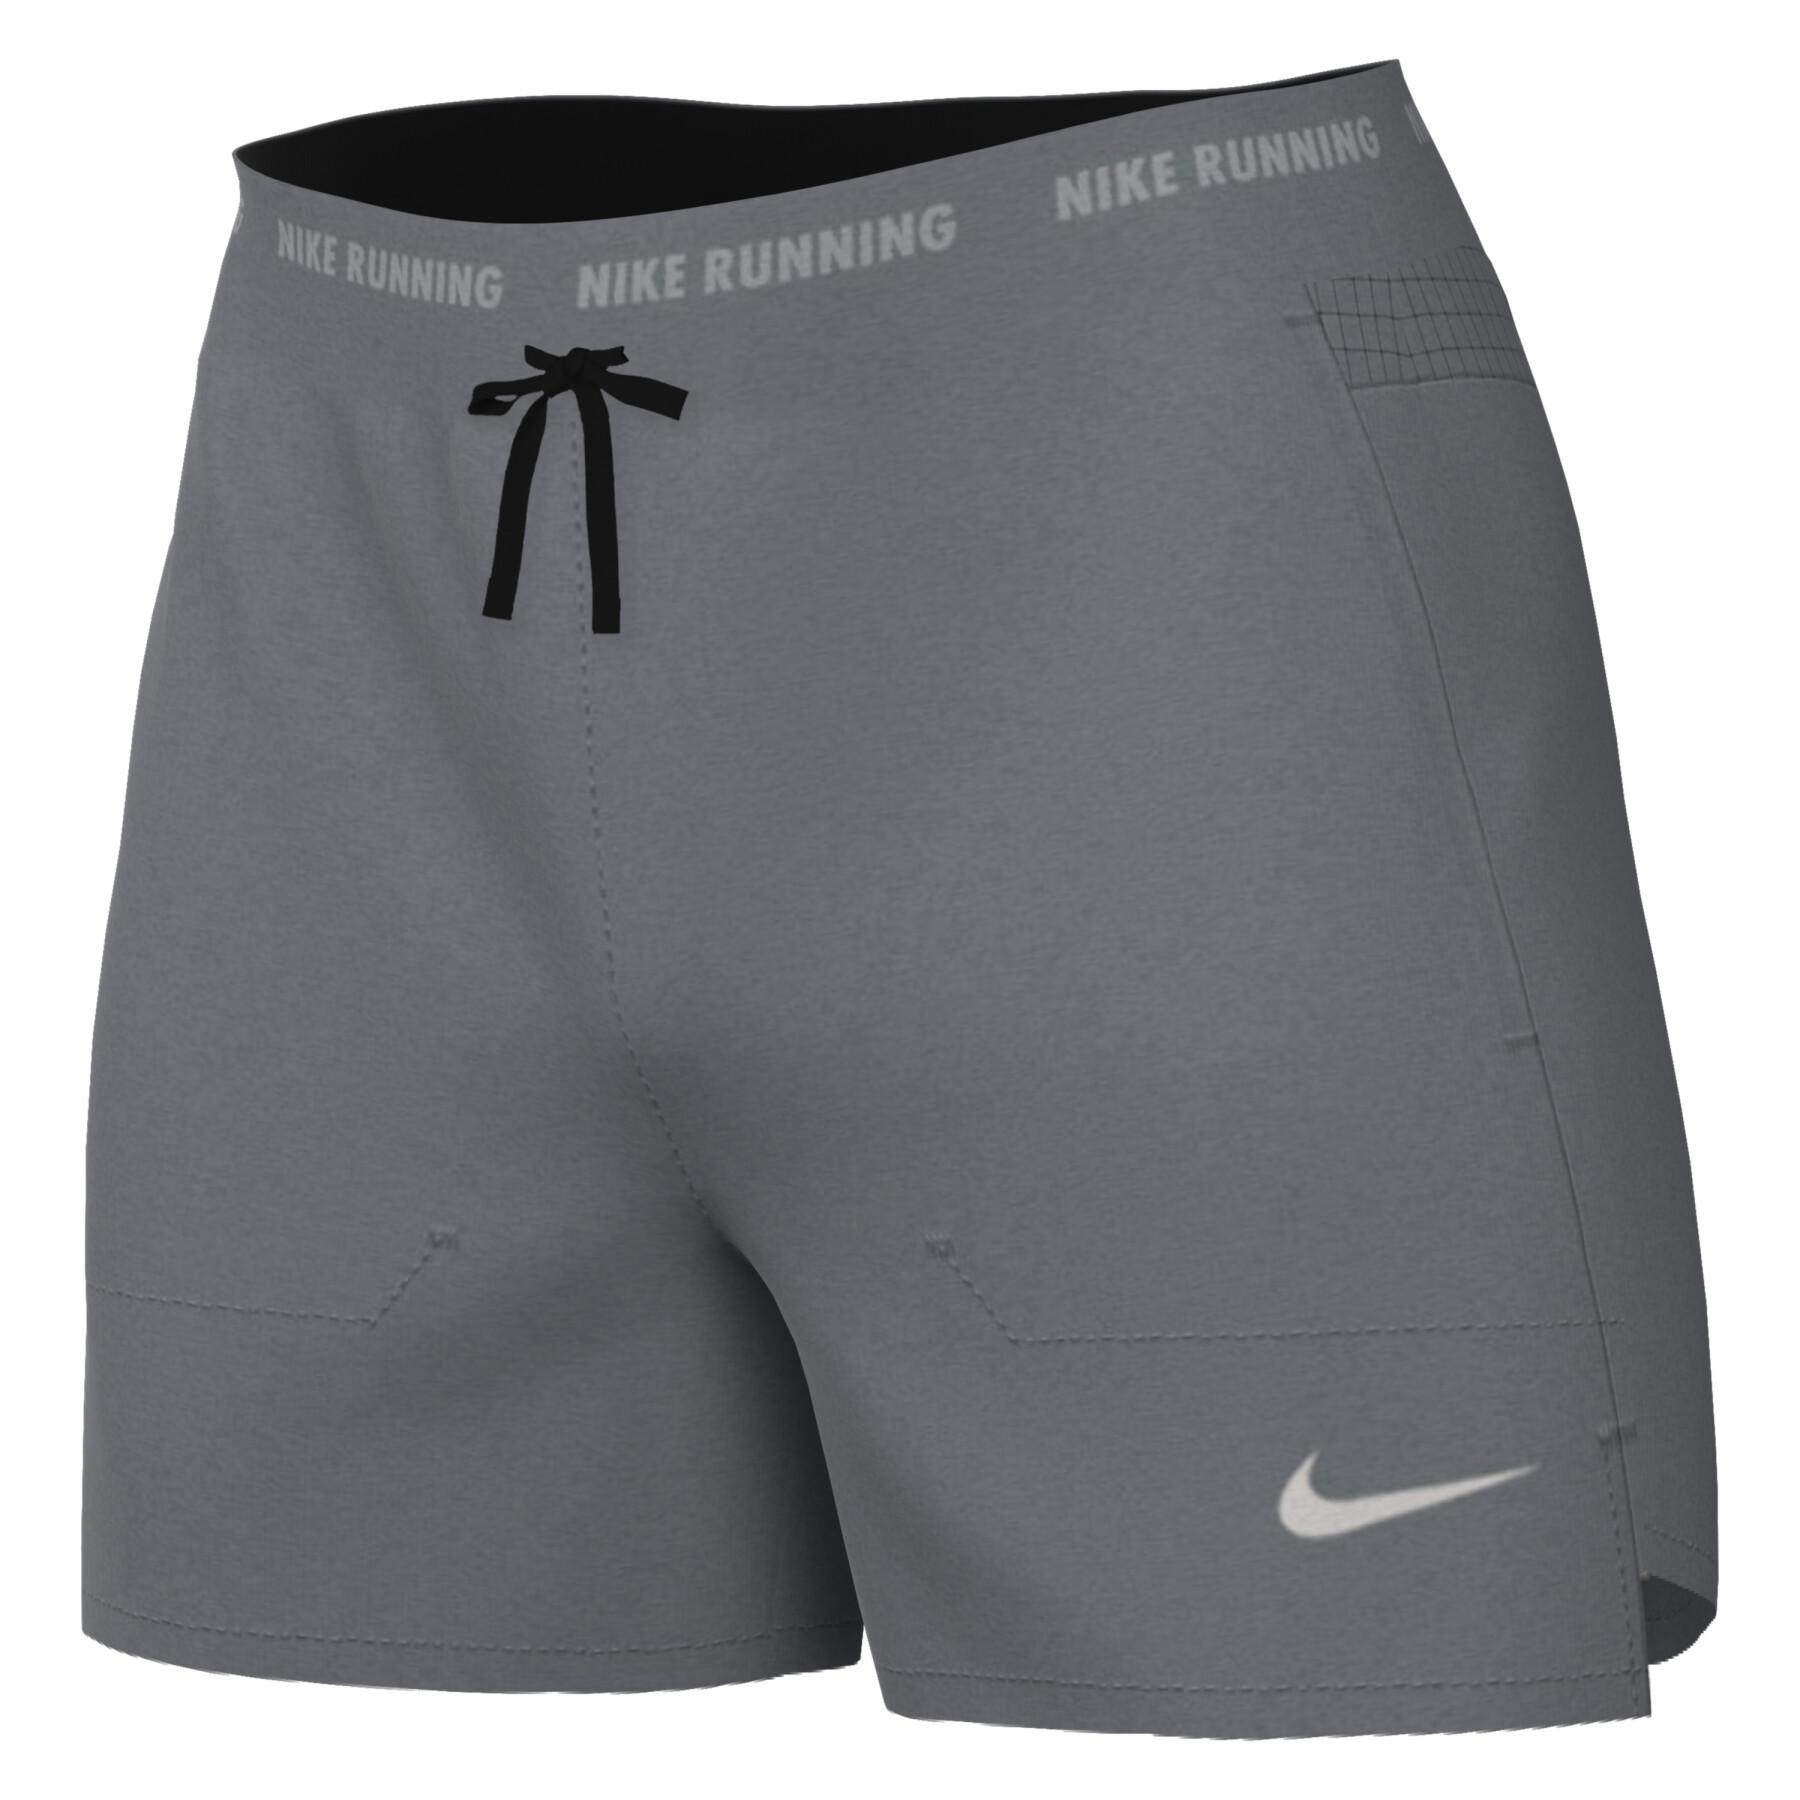 Determinar con precisión Puede ser ignorado Polvo Pantalones cortos 2 en 1 Nike Dri-FIT Stride - Nike - Textil running Hombre  - Running